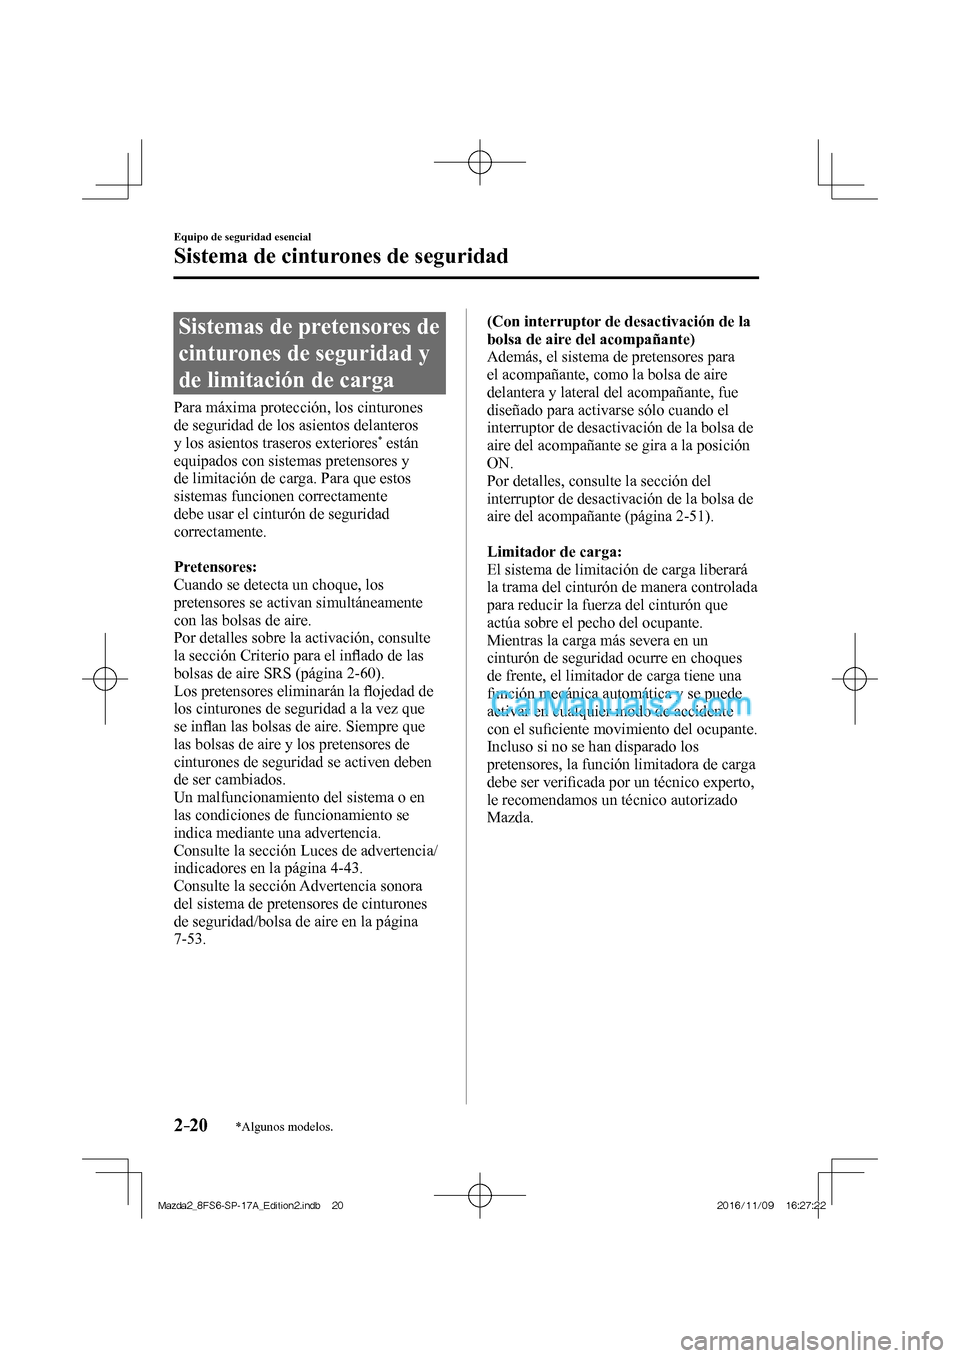 MAZDA MODEL 2 2018  Manual del propietario (in Spanish) 2–20
Equipo de seguridad esencial
Sistema de cinturones de seguridad
*Algunos modelos.
 Sistemas de pretensores de 
cinturones de seguridad y 
de limitación de carga
    Para  máxima  protección,